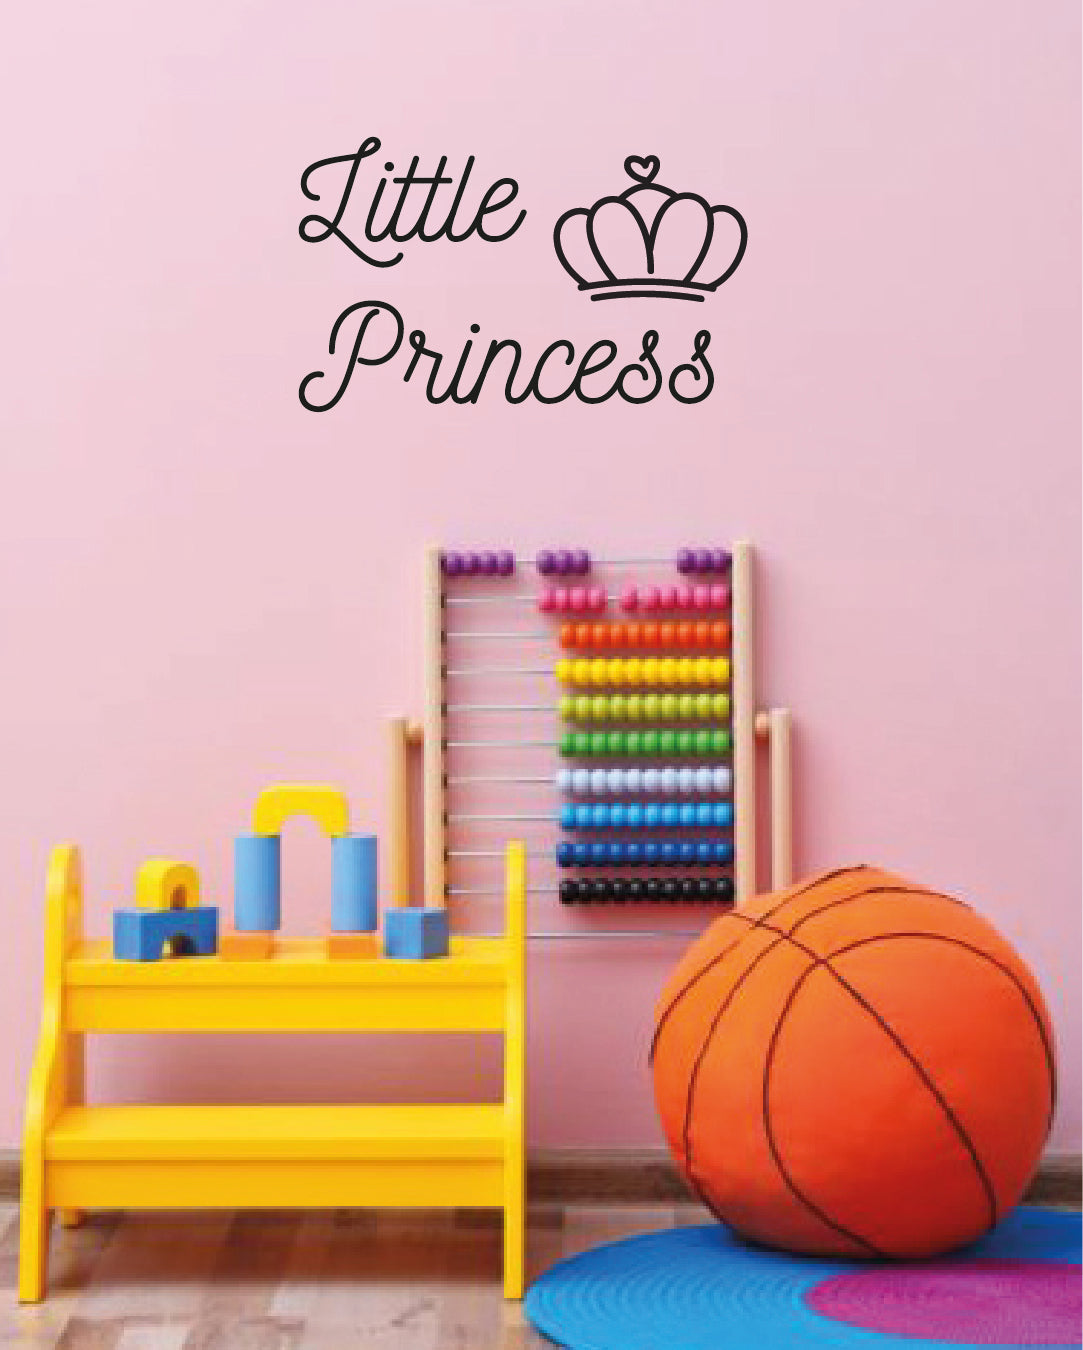 Scritta da parete adesiva Little Princess